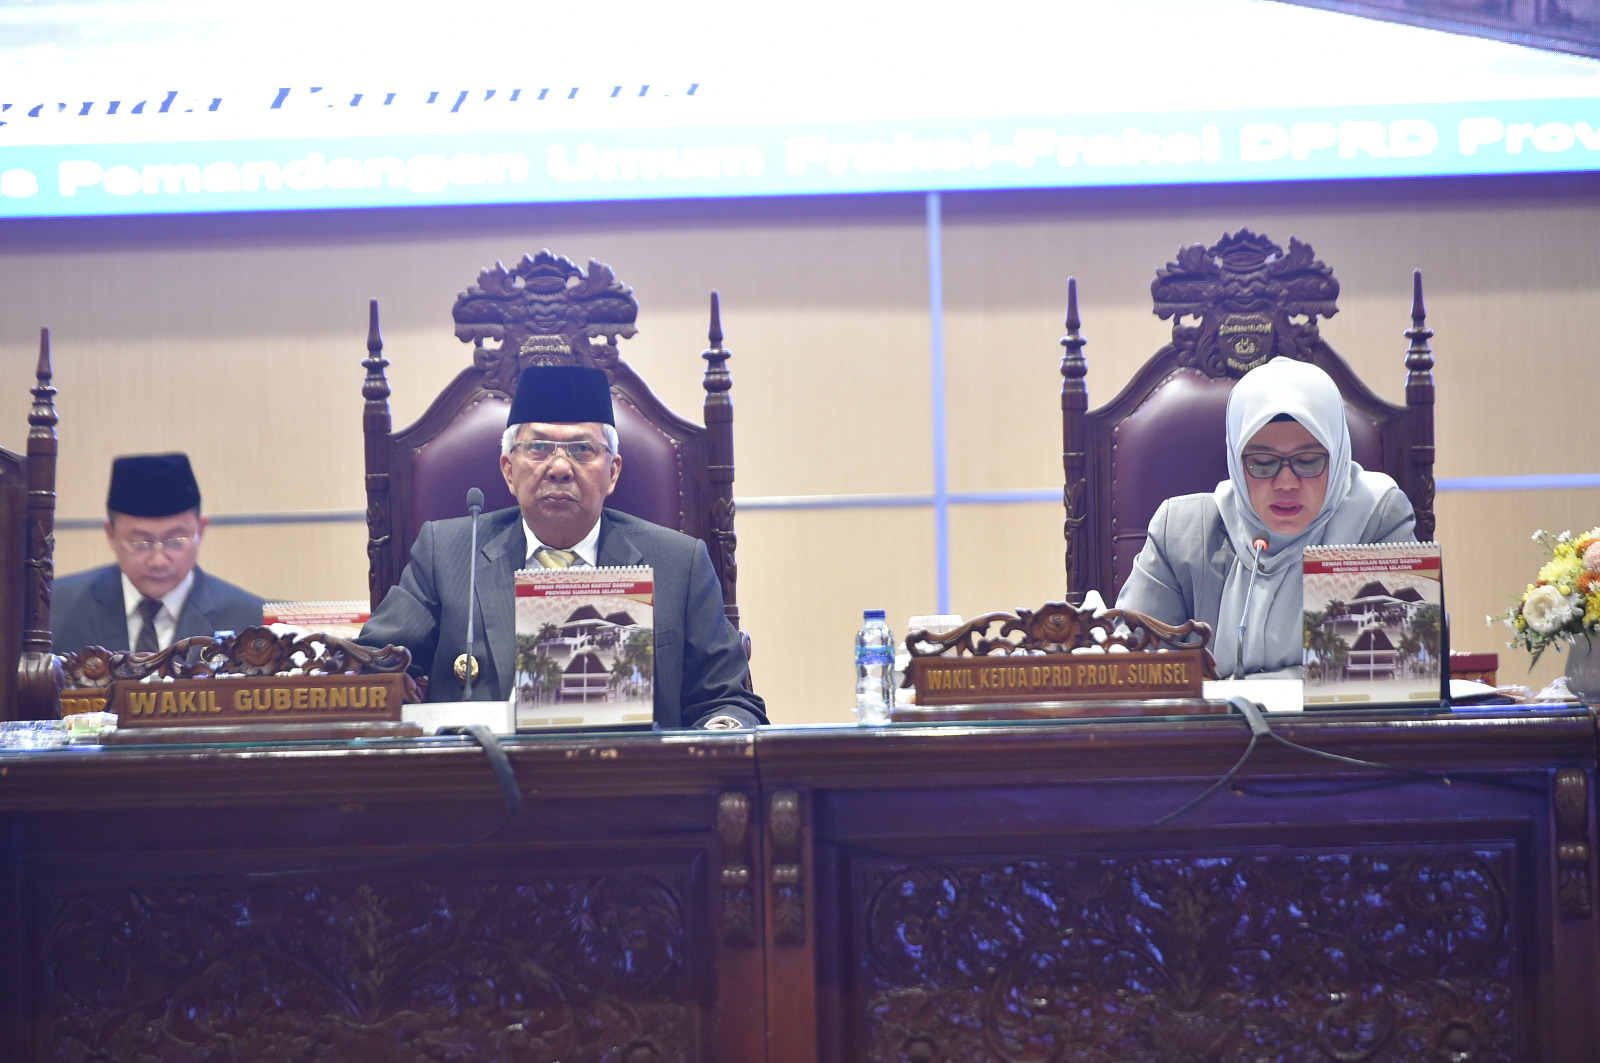 DPRD Provinsi Sumatera Selatan menggelar Rapat Paripurna LXI (61) lanjutan, Senin (20/2) di ruang sidang paripurna DPRD Sumsel